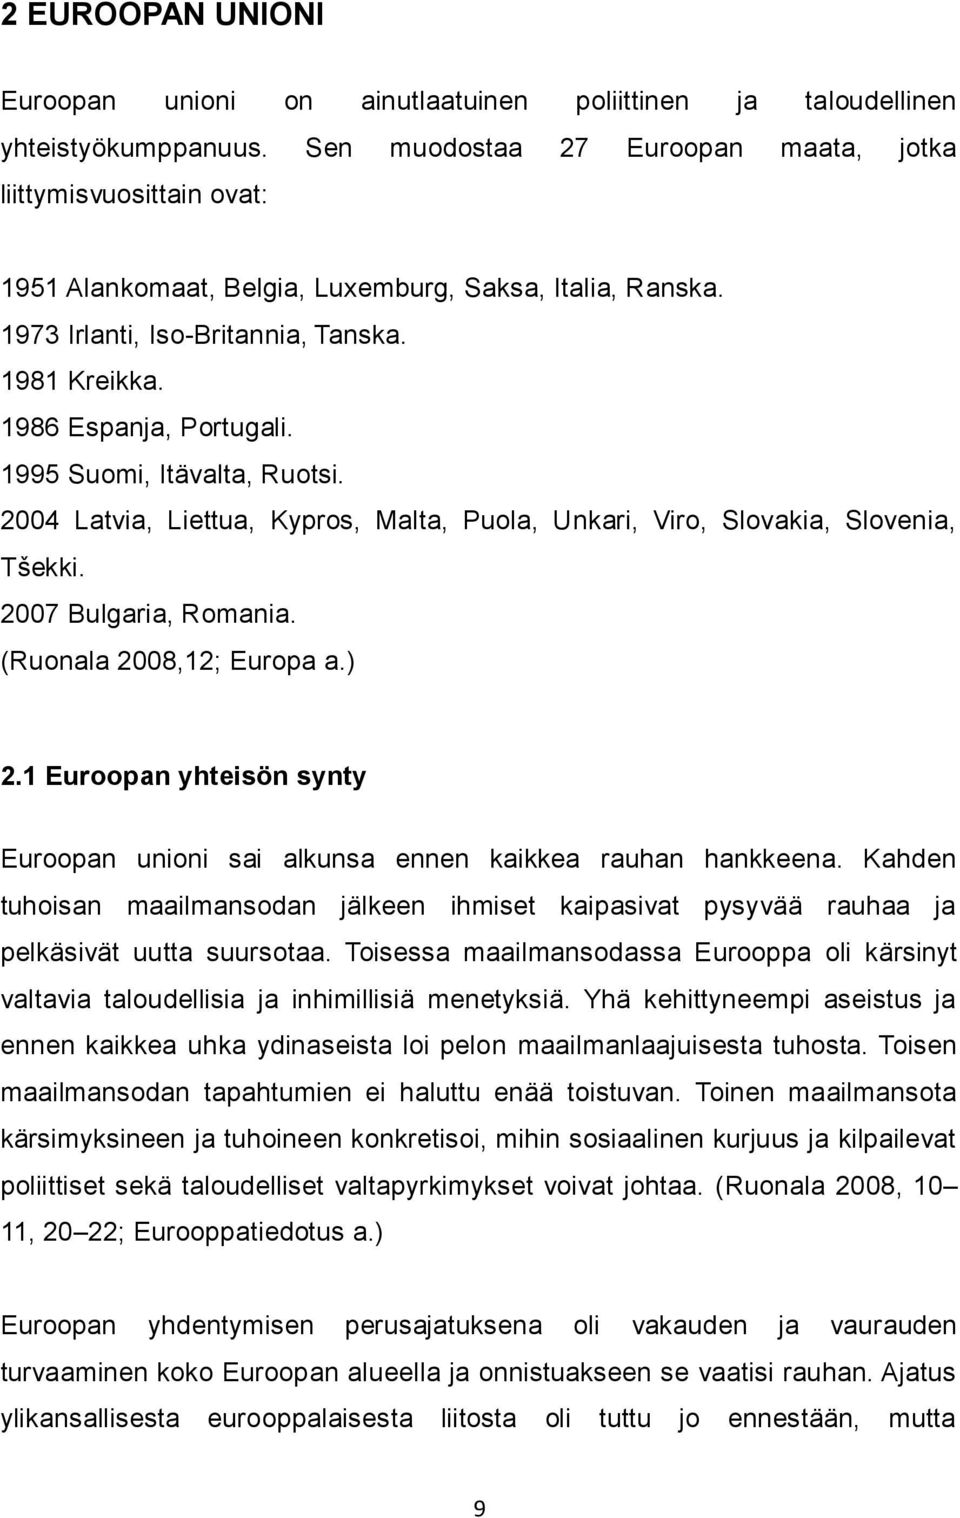 1995 Suomi, Itävalta, Ruotsi. 2004 Latvia, Liettua, Kypros, Malta, Puola, Unkari, Viro, Slovakia, Slovenia, Tšekki. 2007 Bulgaria, Romania. (Ruonala 2008,12; Europa a.) 2.